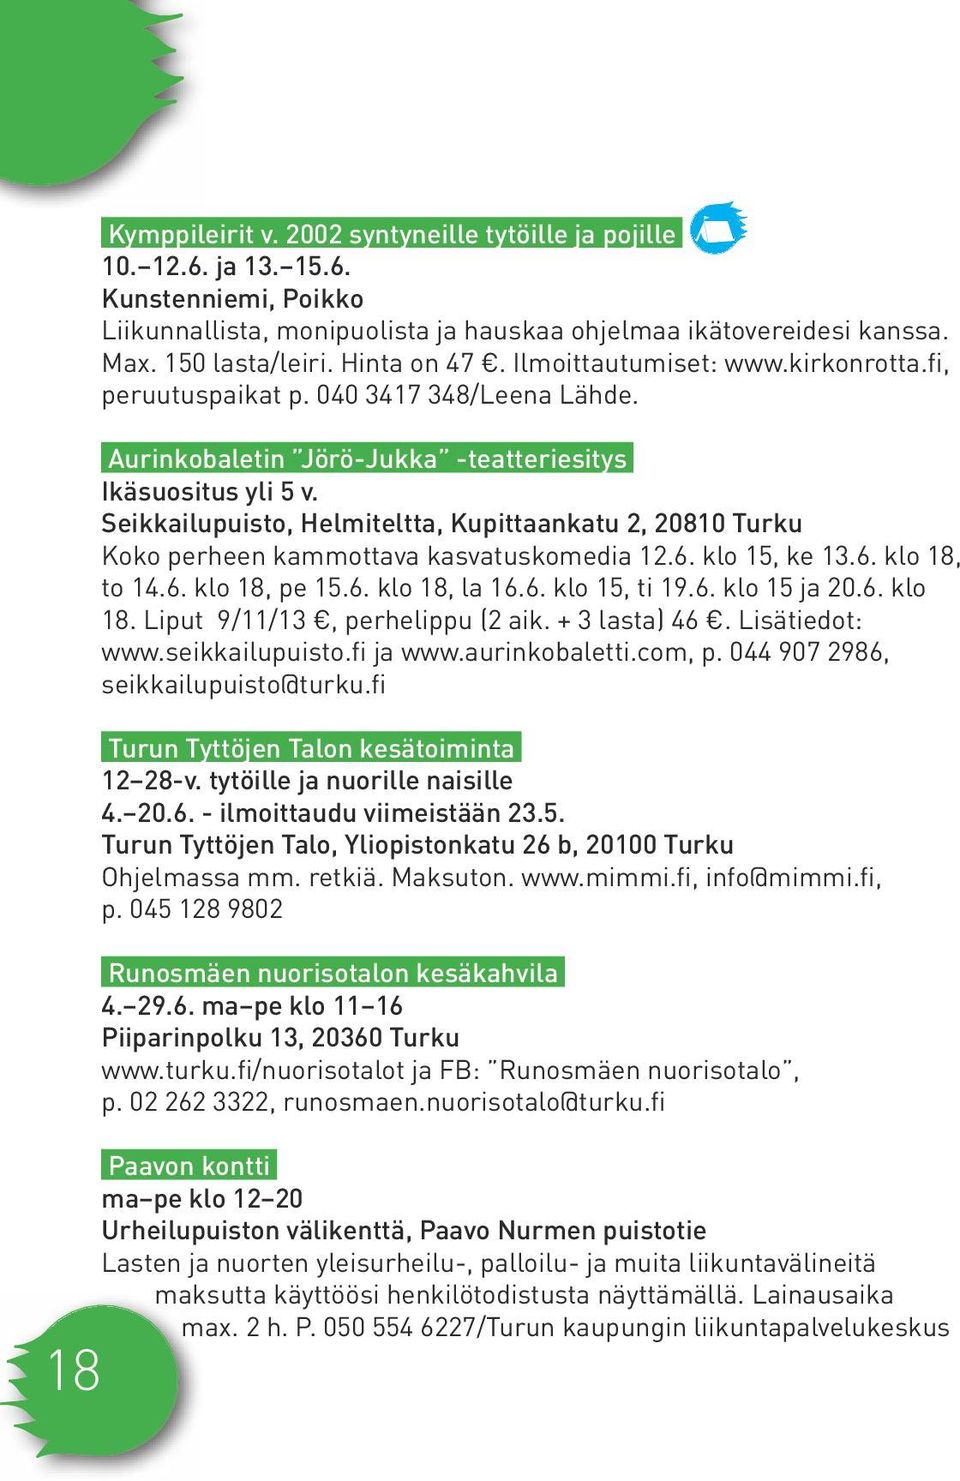 Seikkailupuisto, Helmiteltta, Kupittaankatu 2, 20810 Turku Koko perheen kammottava kasvatuskomedia 12.6. klo 15, ke 13.6. klo 18, to 14.6. klo 18, pe 15.6. klo 18, la 16.6. klo 15, ti 19.6. klo 15 ja 20.